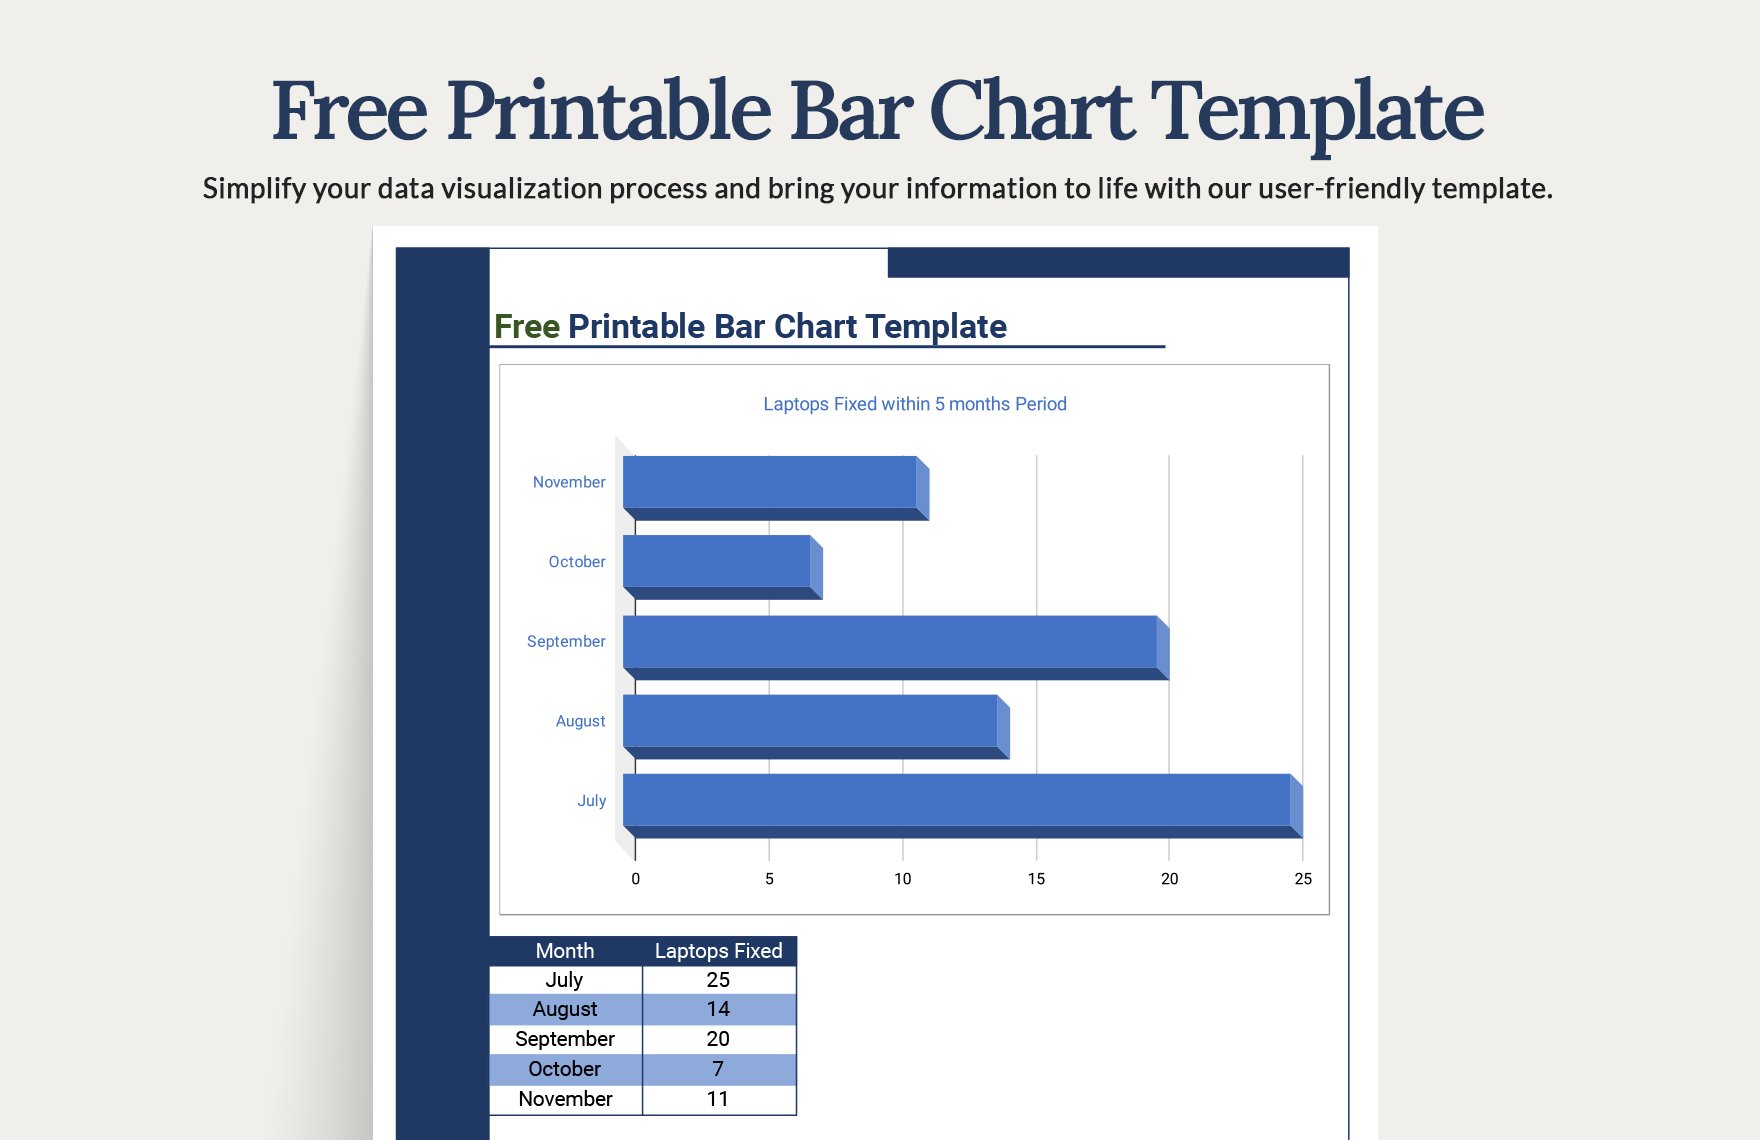 Free Printable Bar Chart Template